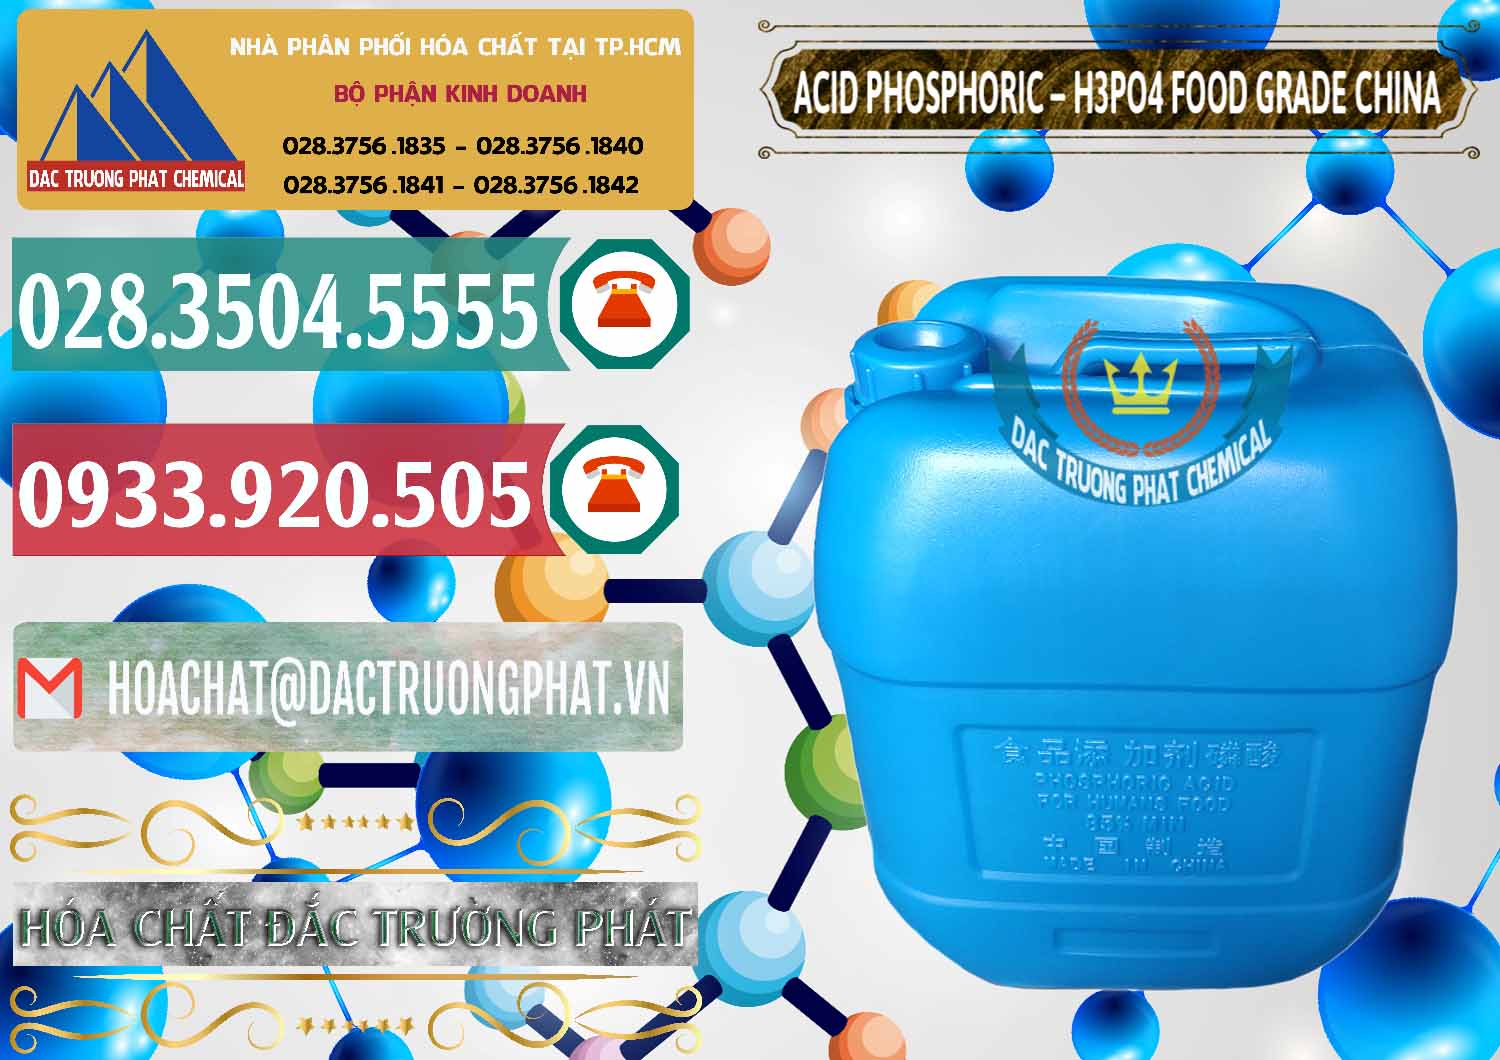 Nơi chuyên bán - cung cấp Acid Phosphoric – H3PO4 85% Food Grade Trung Quốc China - 0015 - Cty chuyên bán và phân phối hóa chất tại TP.HCM - muabanhoachat.vn